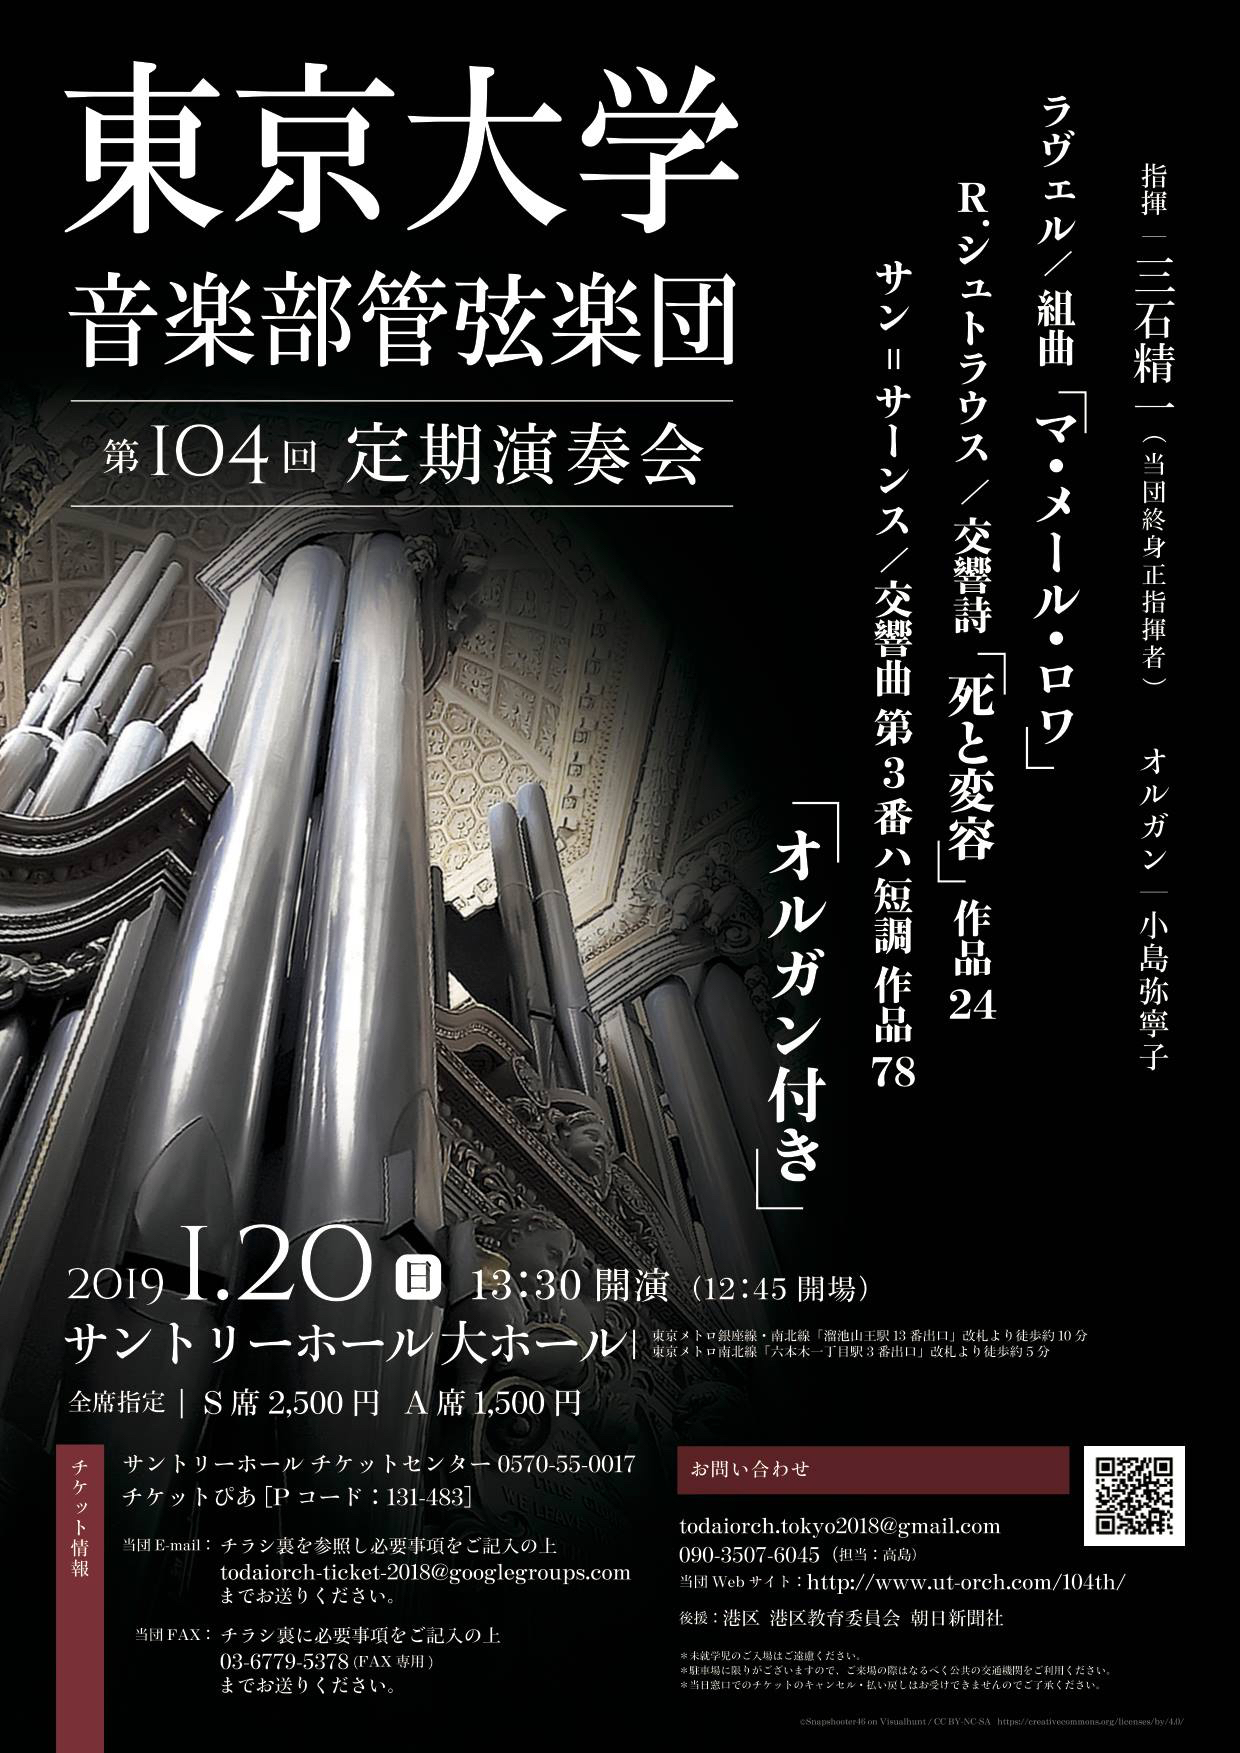 東京大学音楽部管弦楽団第104回定期演奏会